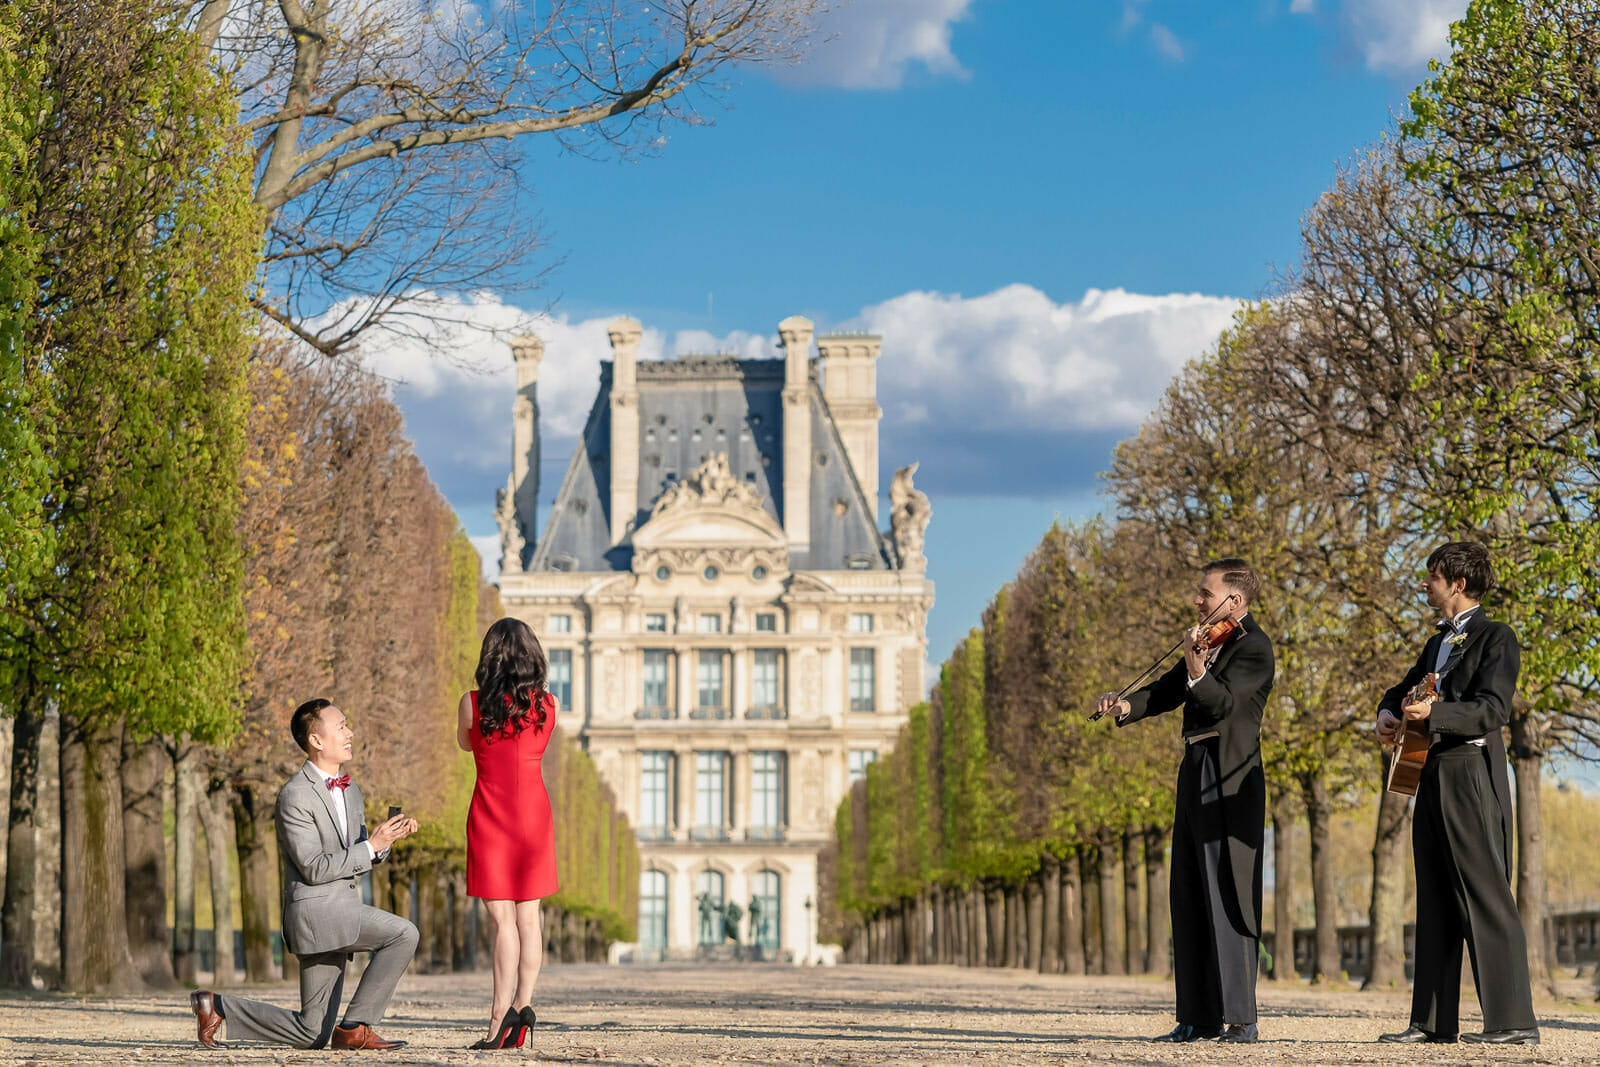 Romantic Tuileries Garden Paris surprise proposal with musicians